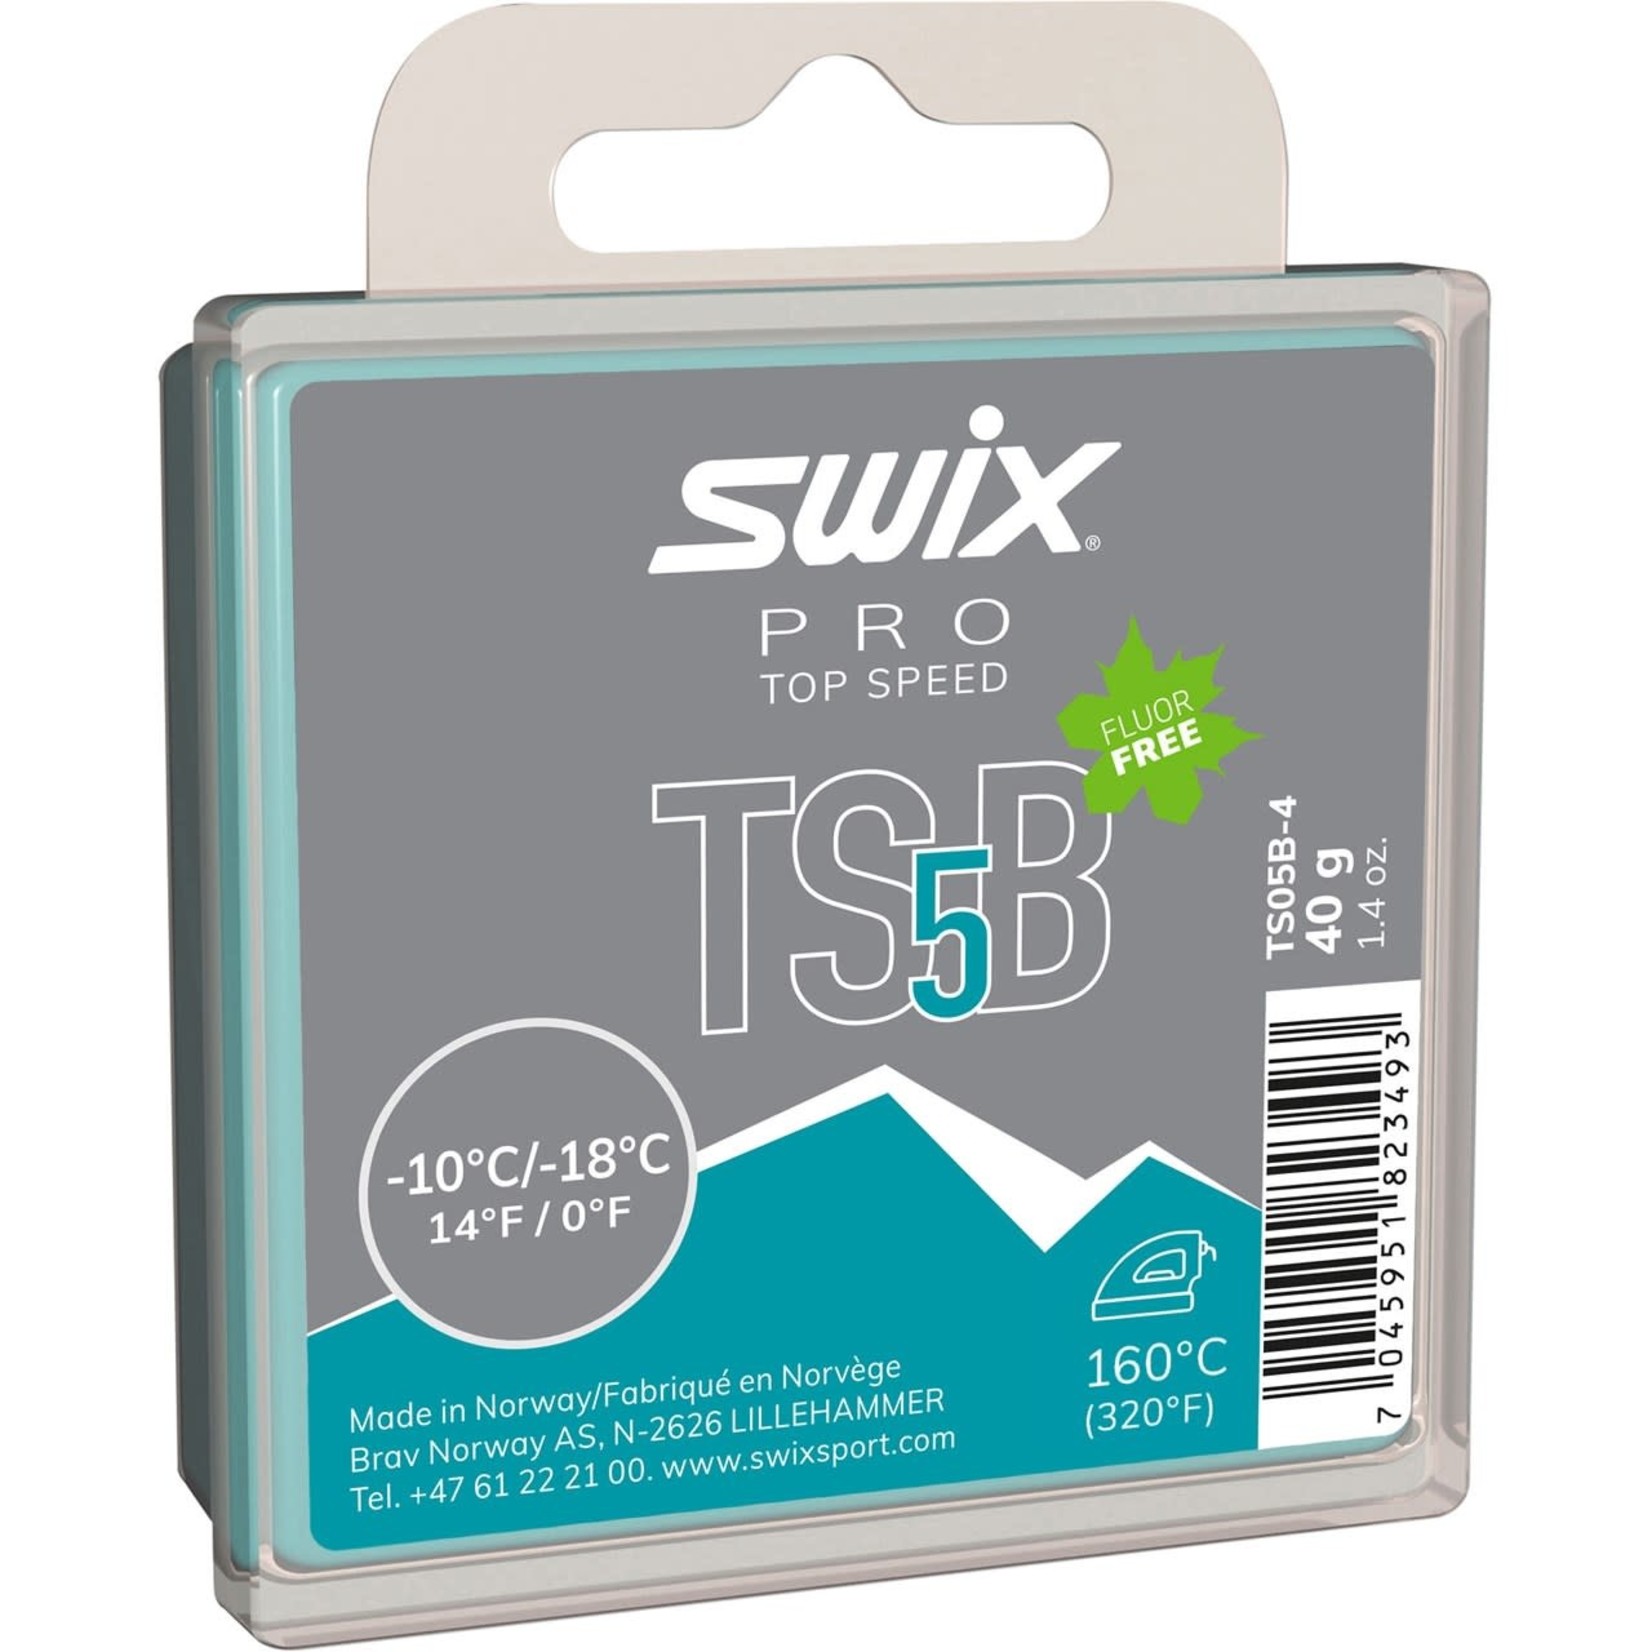 Swix Swix Pro TS